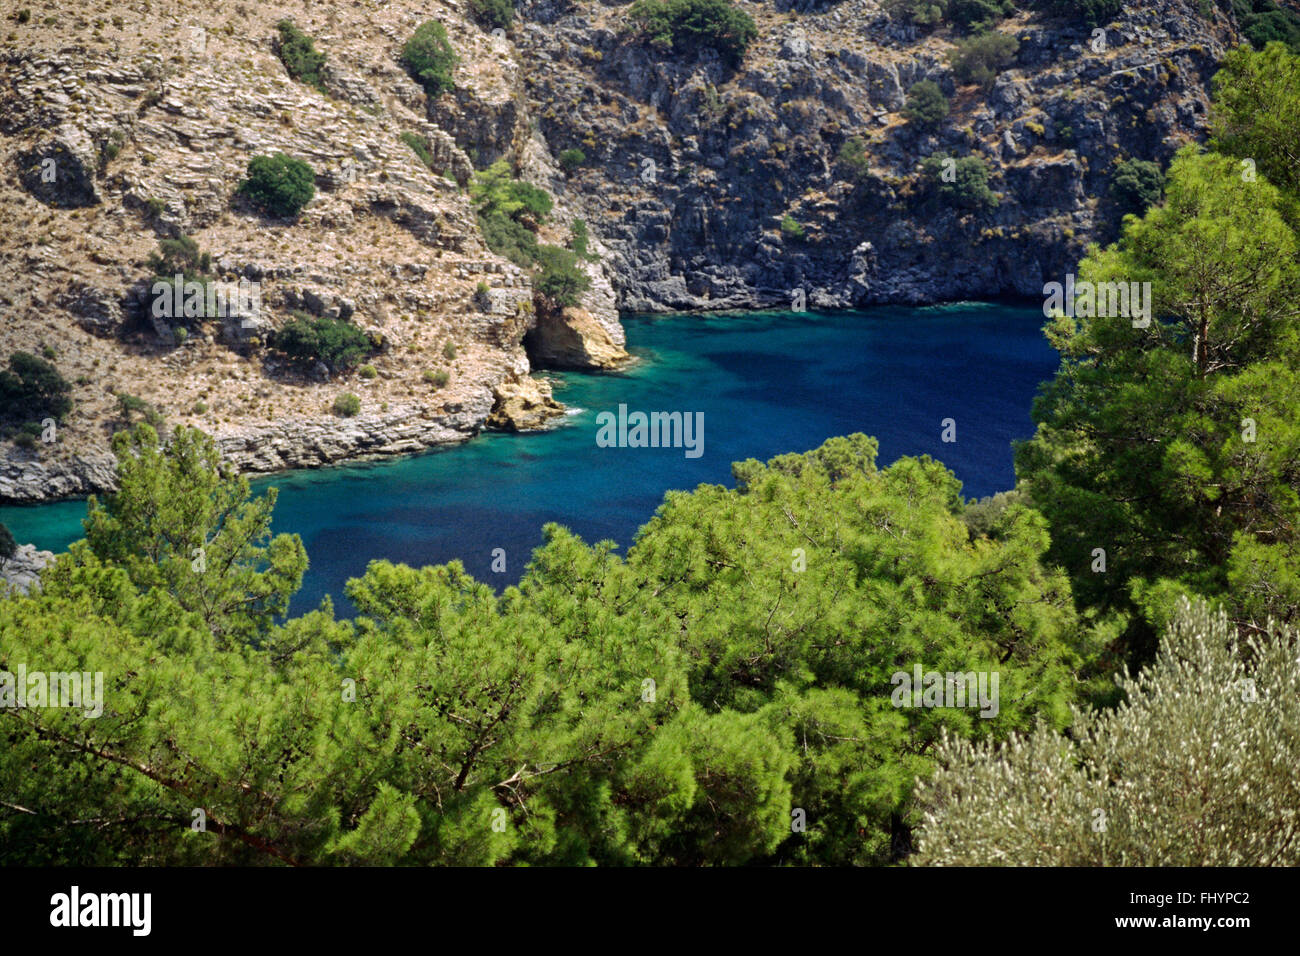 Das wunderschöne Wasser der türkischen Riviera - Türkei Stockfoto